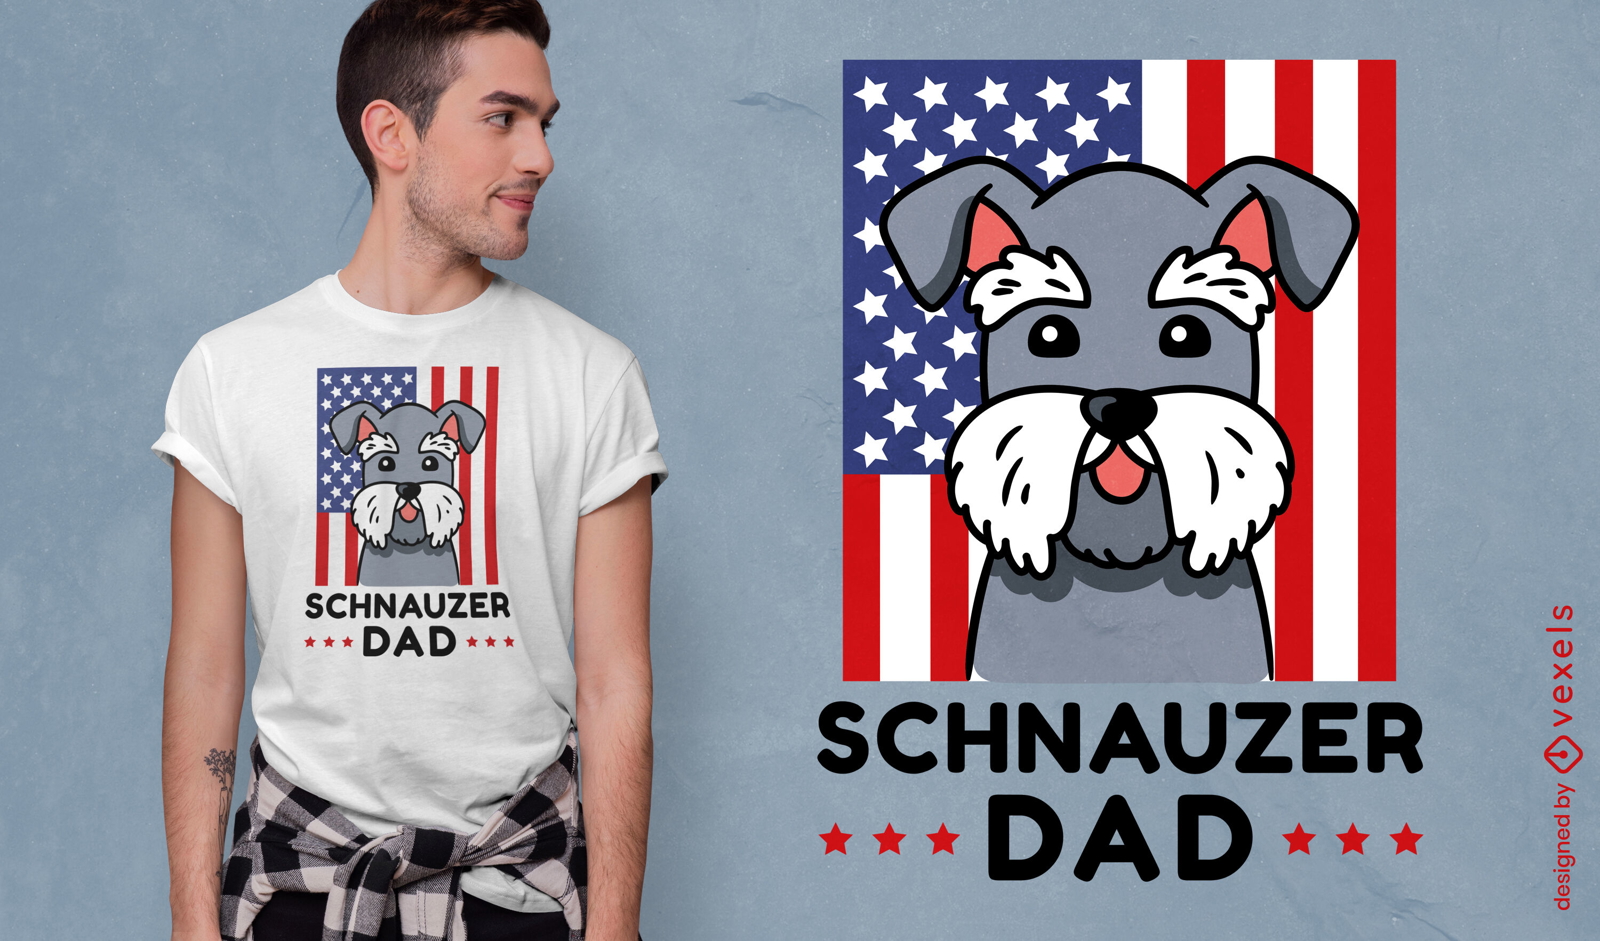 Schnauzer dad t-shirt design